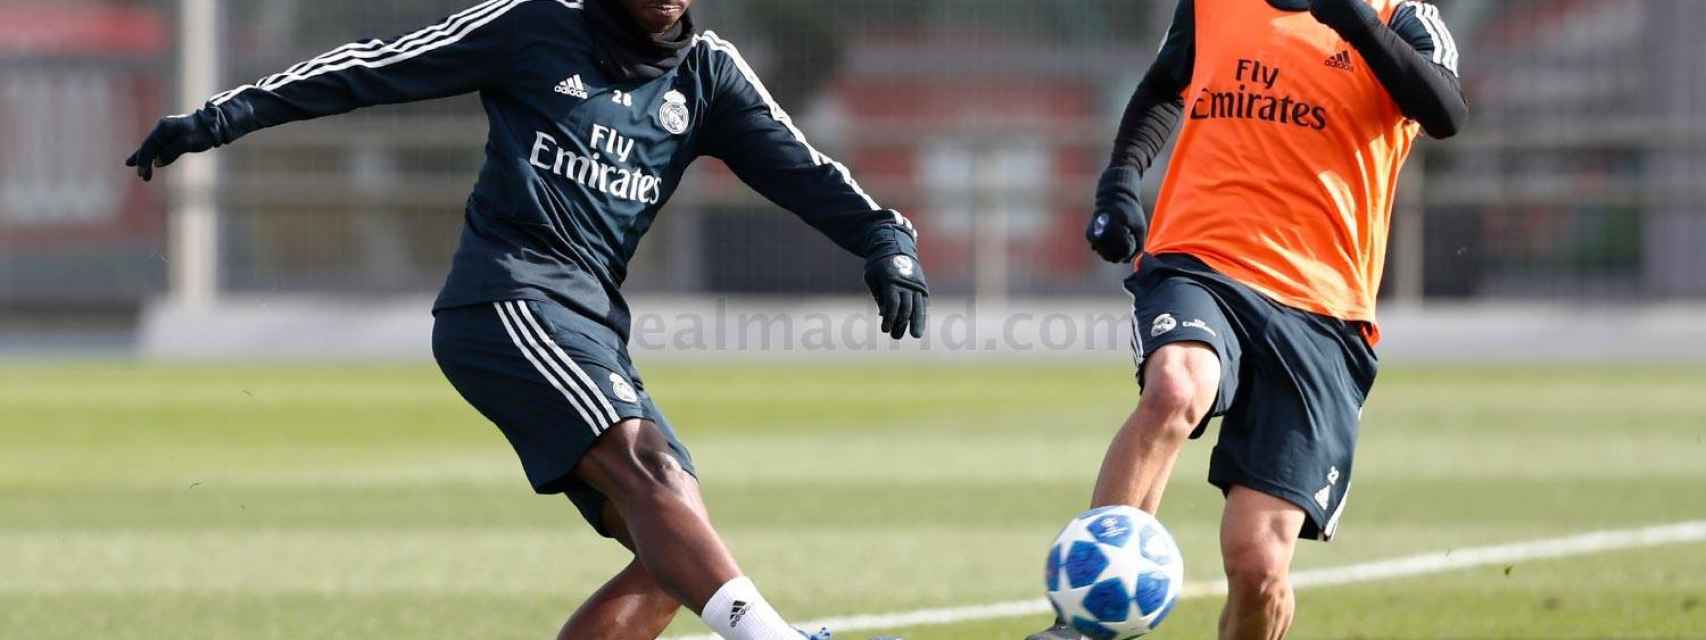 Vinicius e Isco, en un entrenamiento del Real Madrid